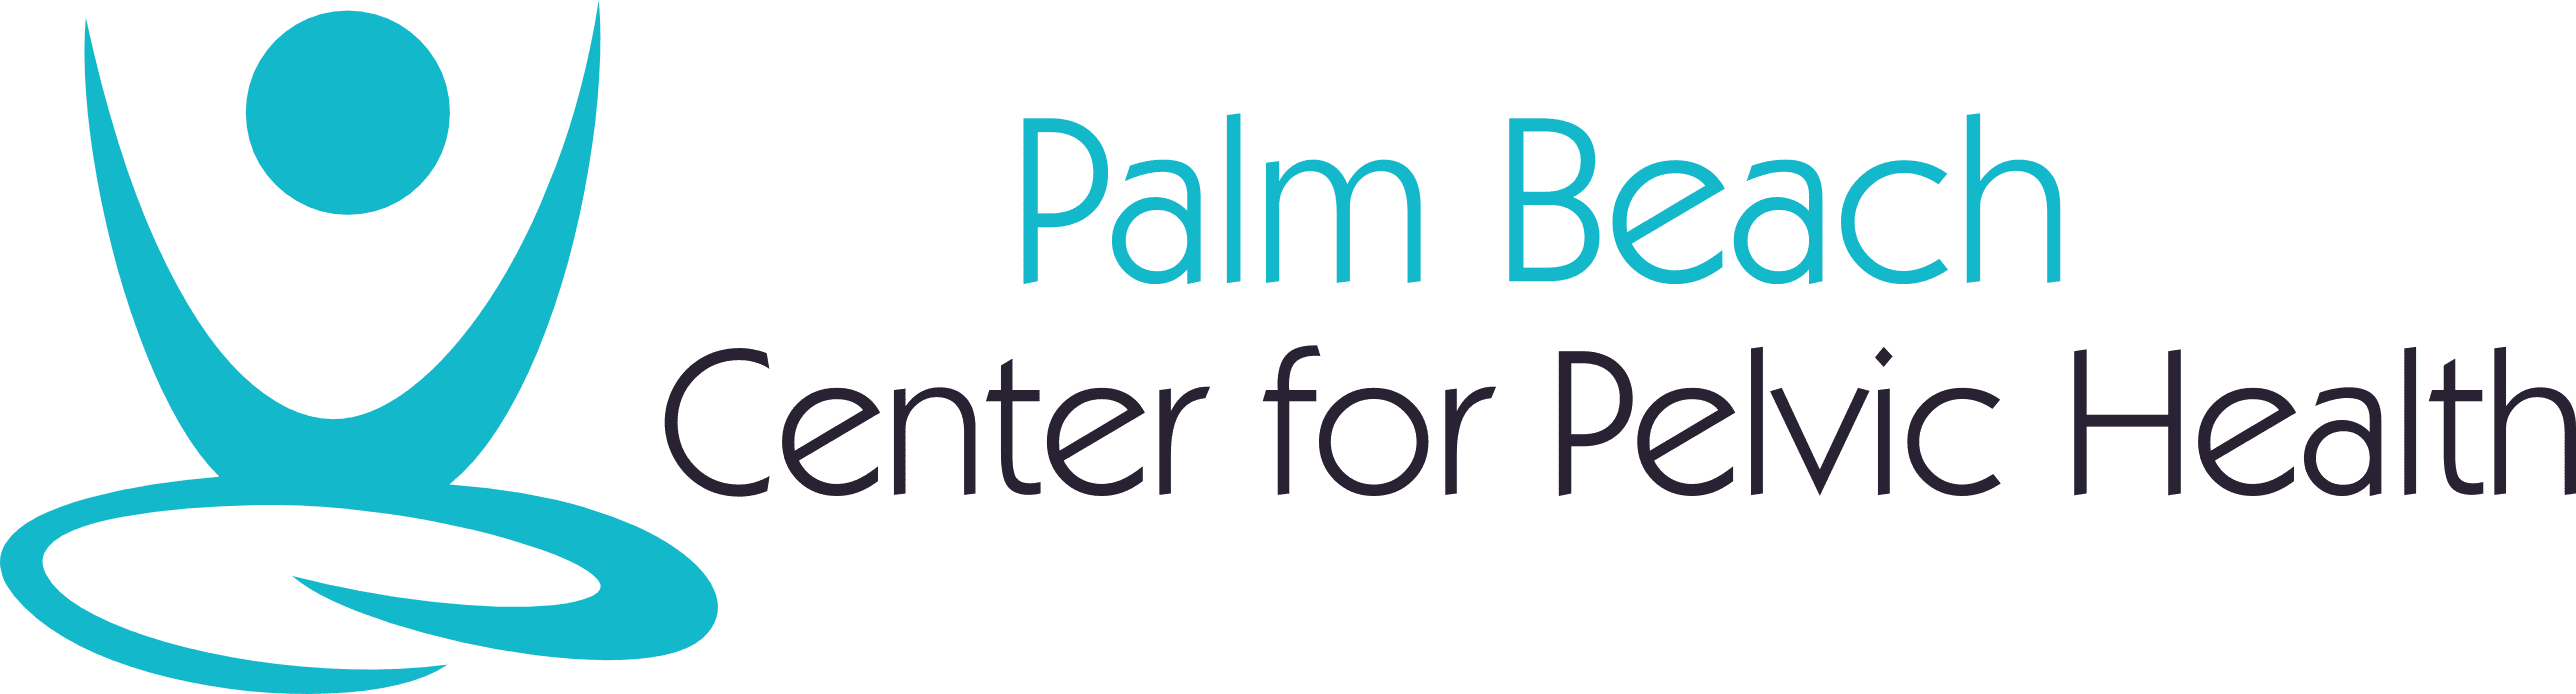 Palm Beach Center for Pelvic Health